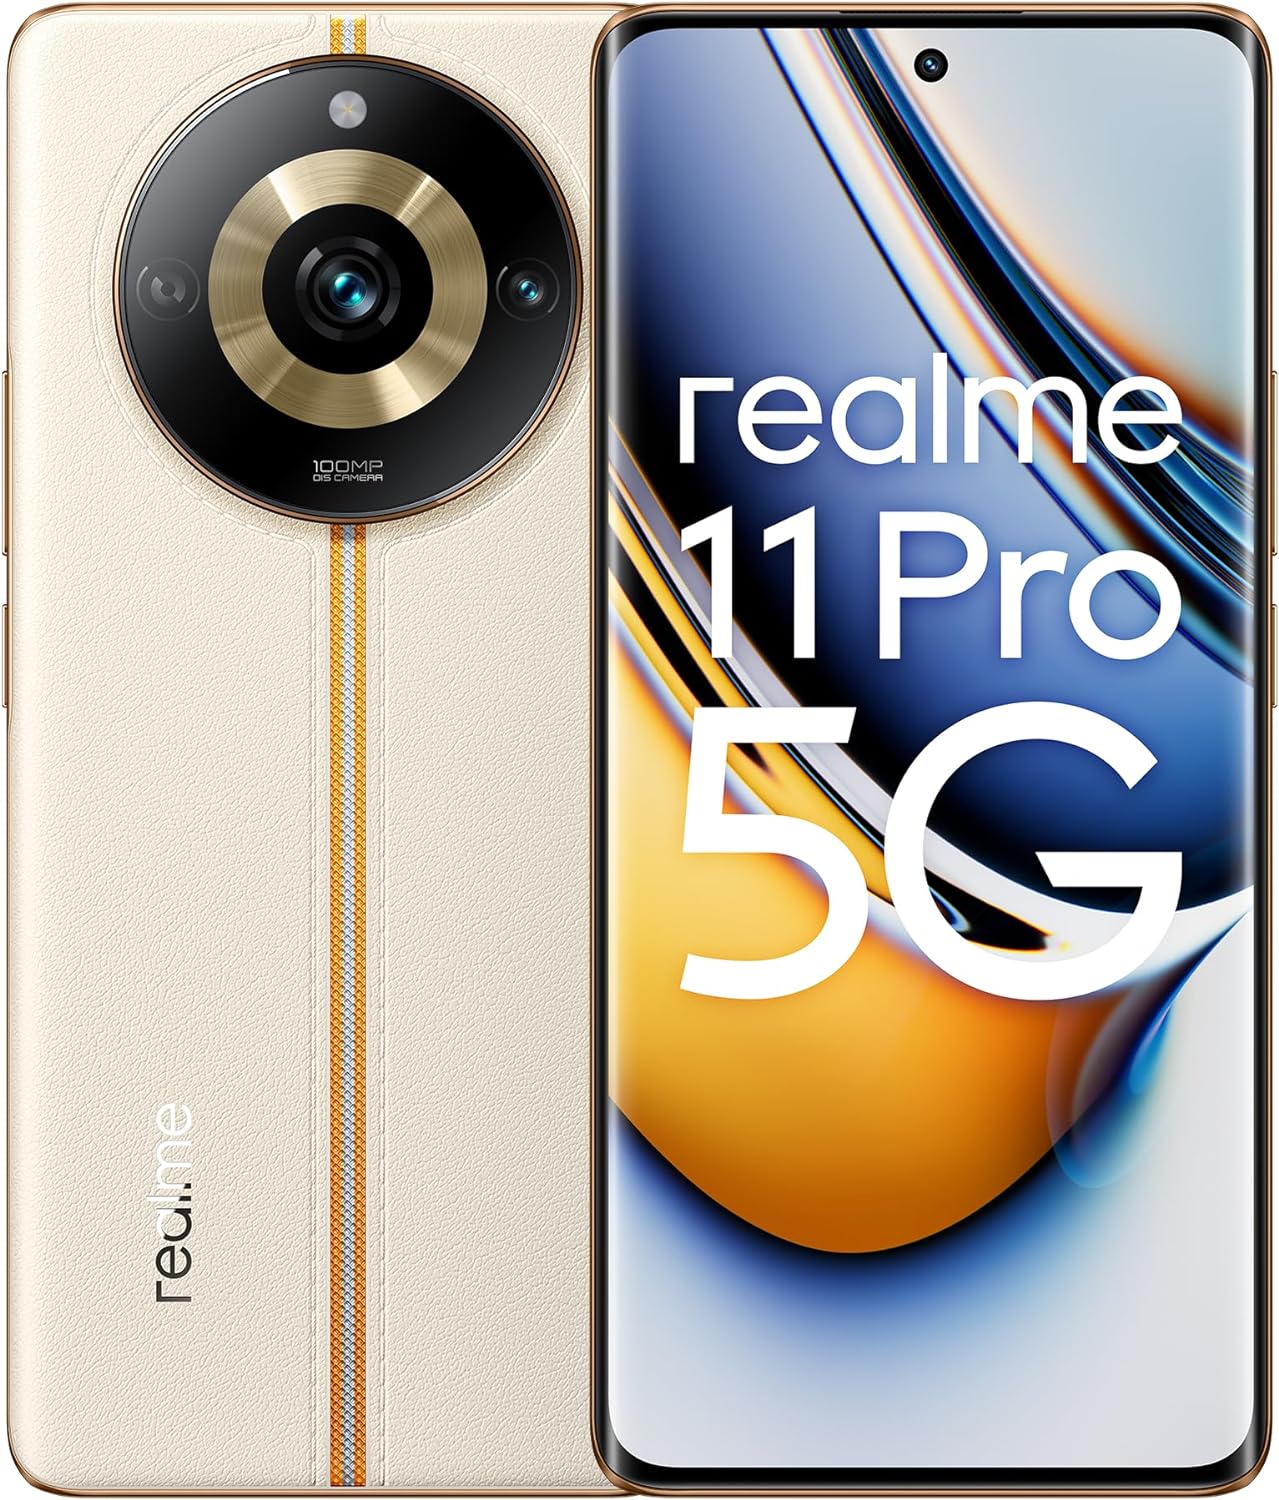 realme 11 Pro 5G